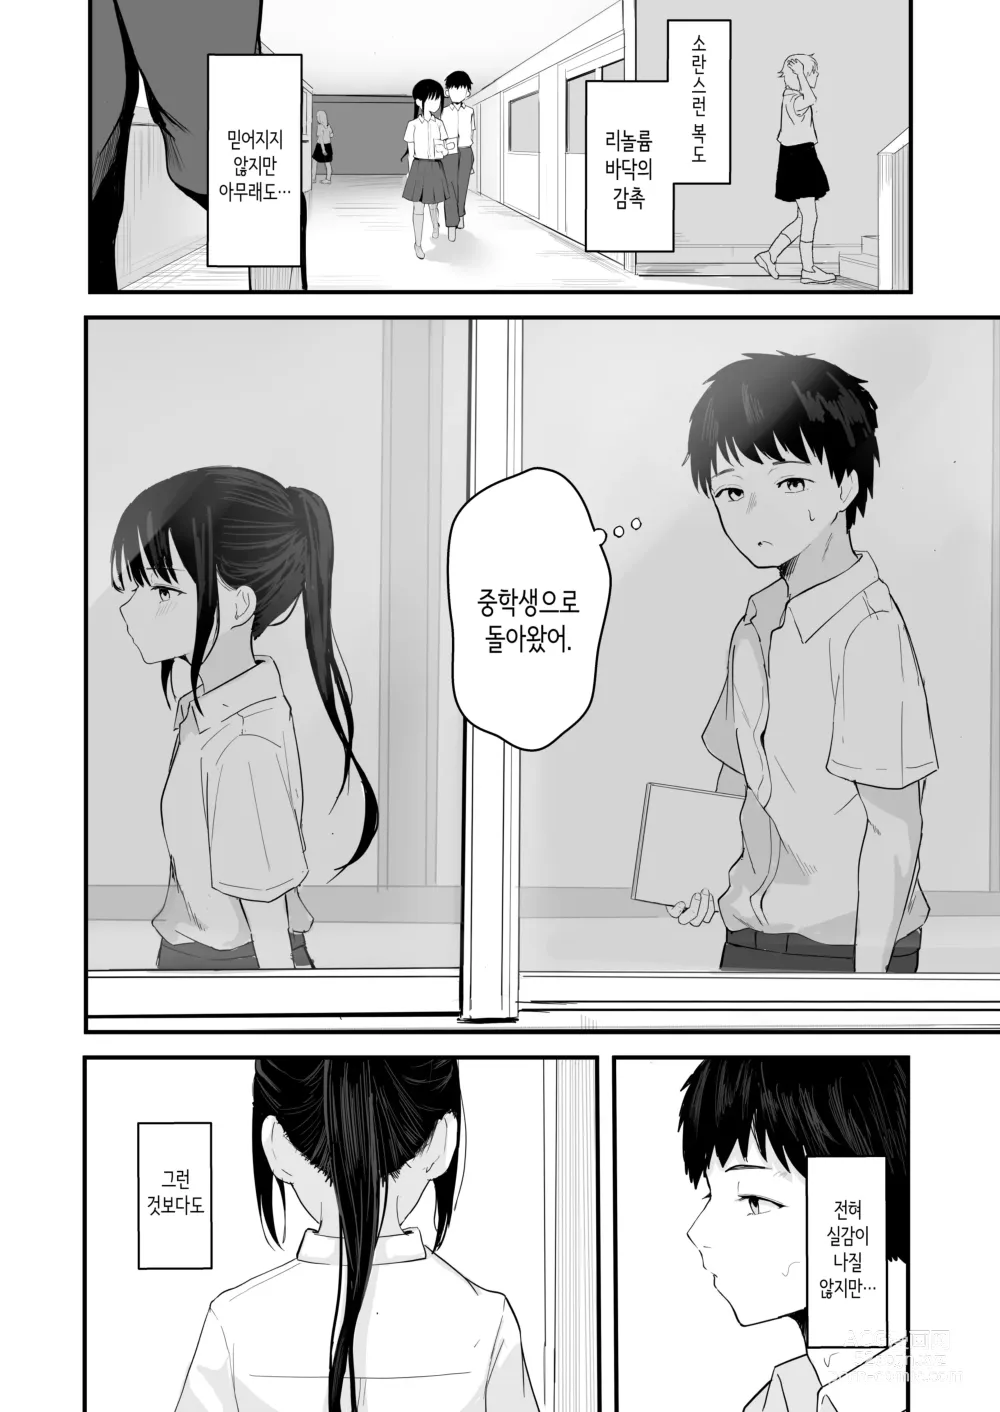 Page 8 of doujinshi 청춘을 재시작할 수 있다면 이번에야말로 좋아했던 동급생과 사귀어서 반드시 미친듯이 섹스하고 싶다.